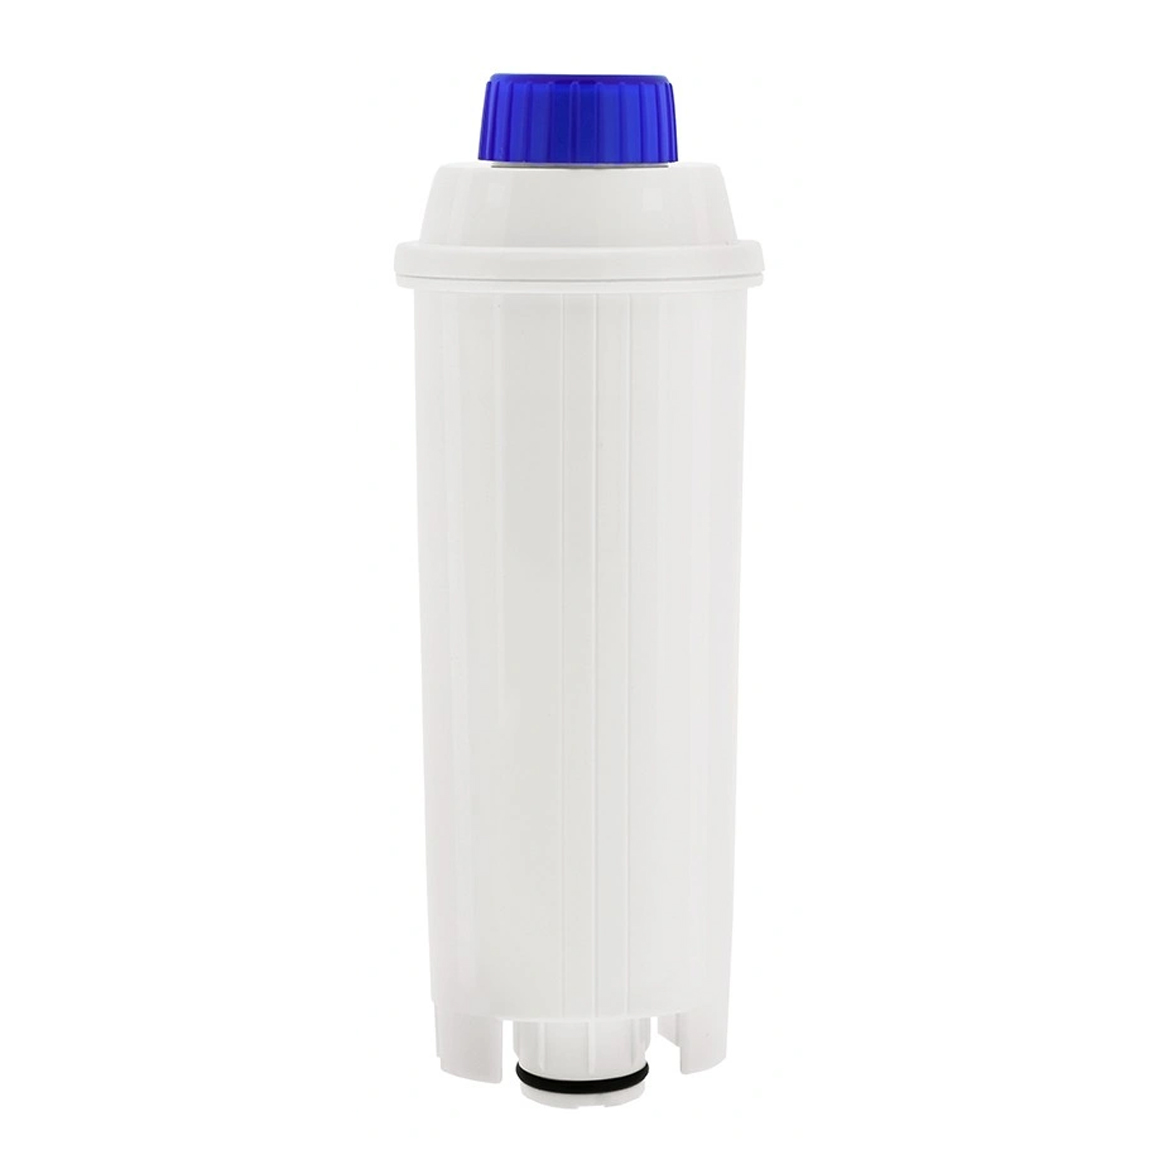 DLSC002 waterfilter voor De'Longhi ECAM (eigen merk)